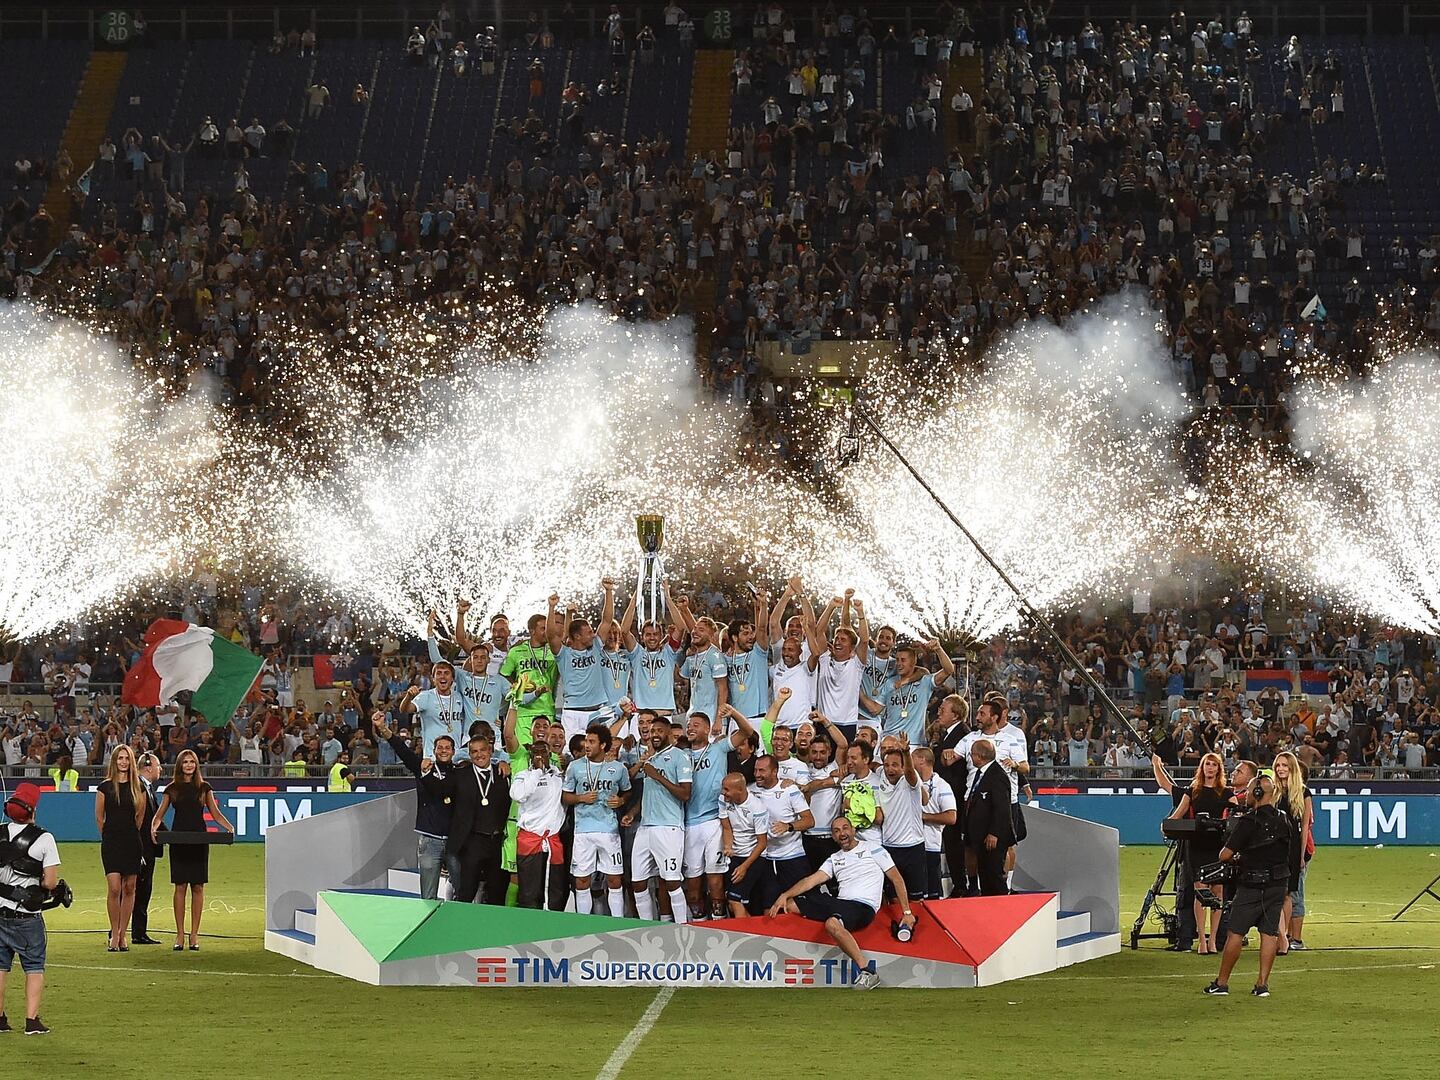 Lazio, campeón de la Supercopa de Italia, tras vencer a Juventus